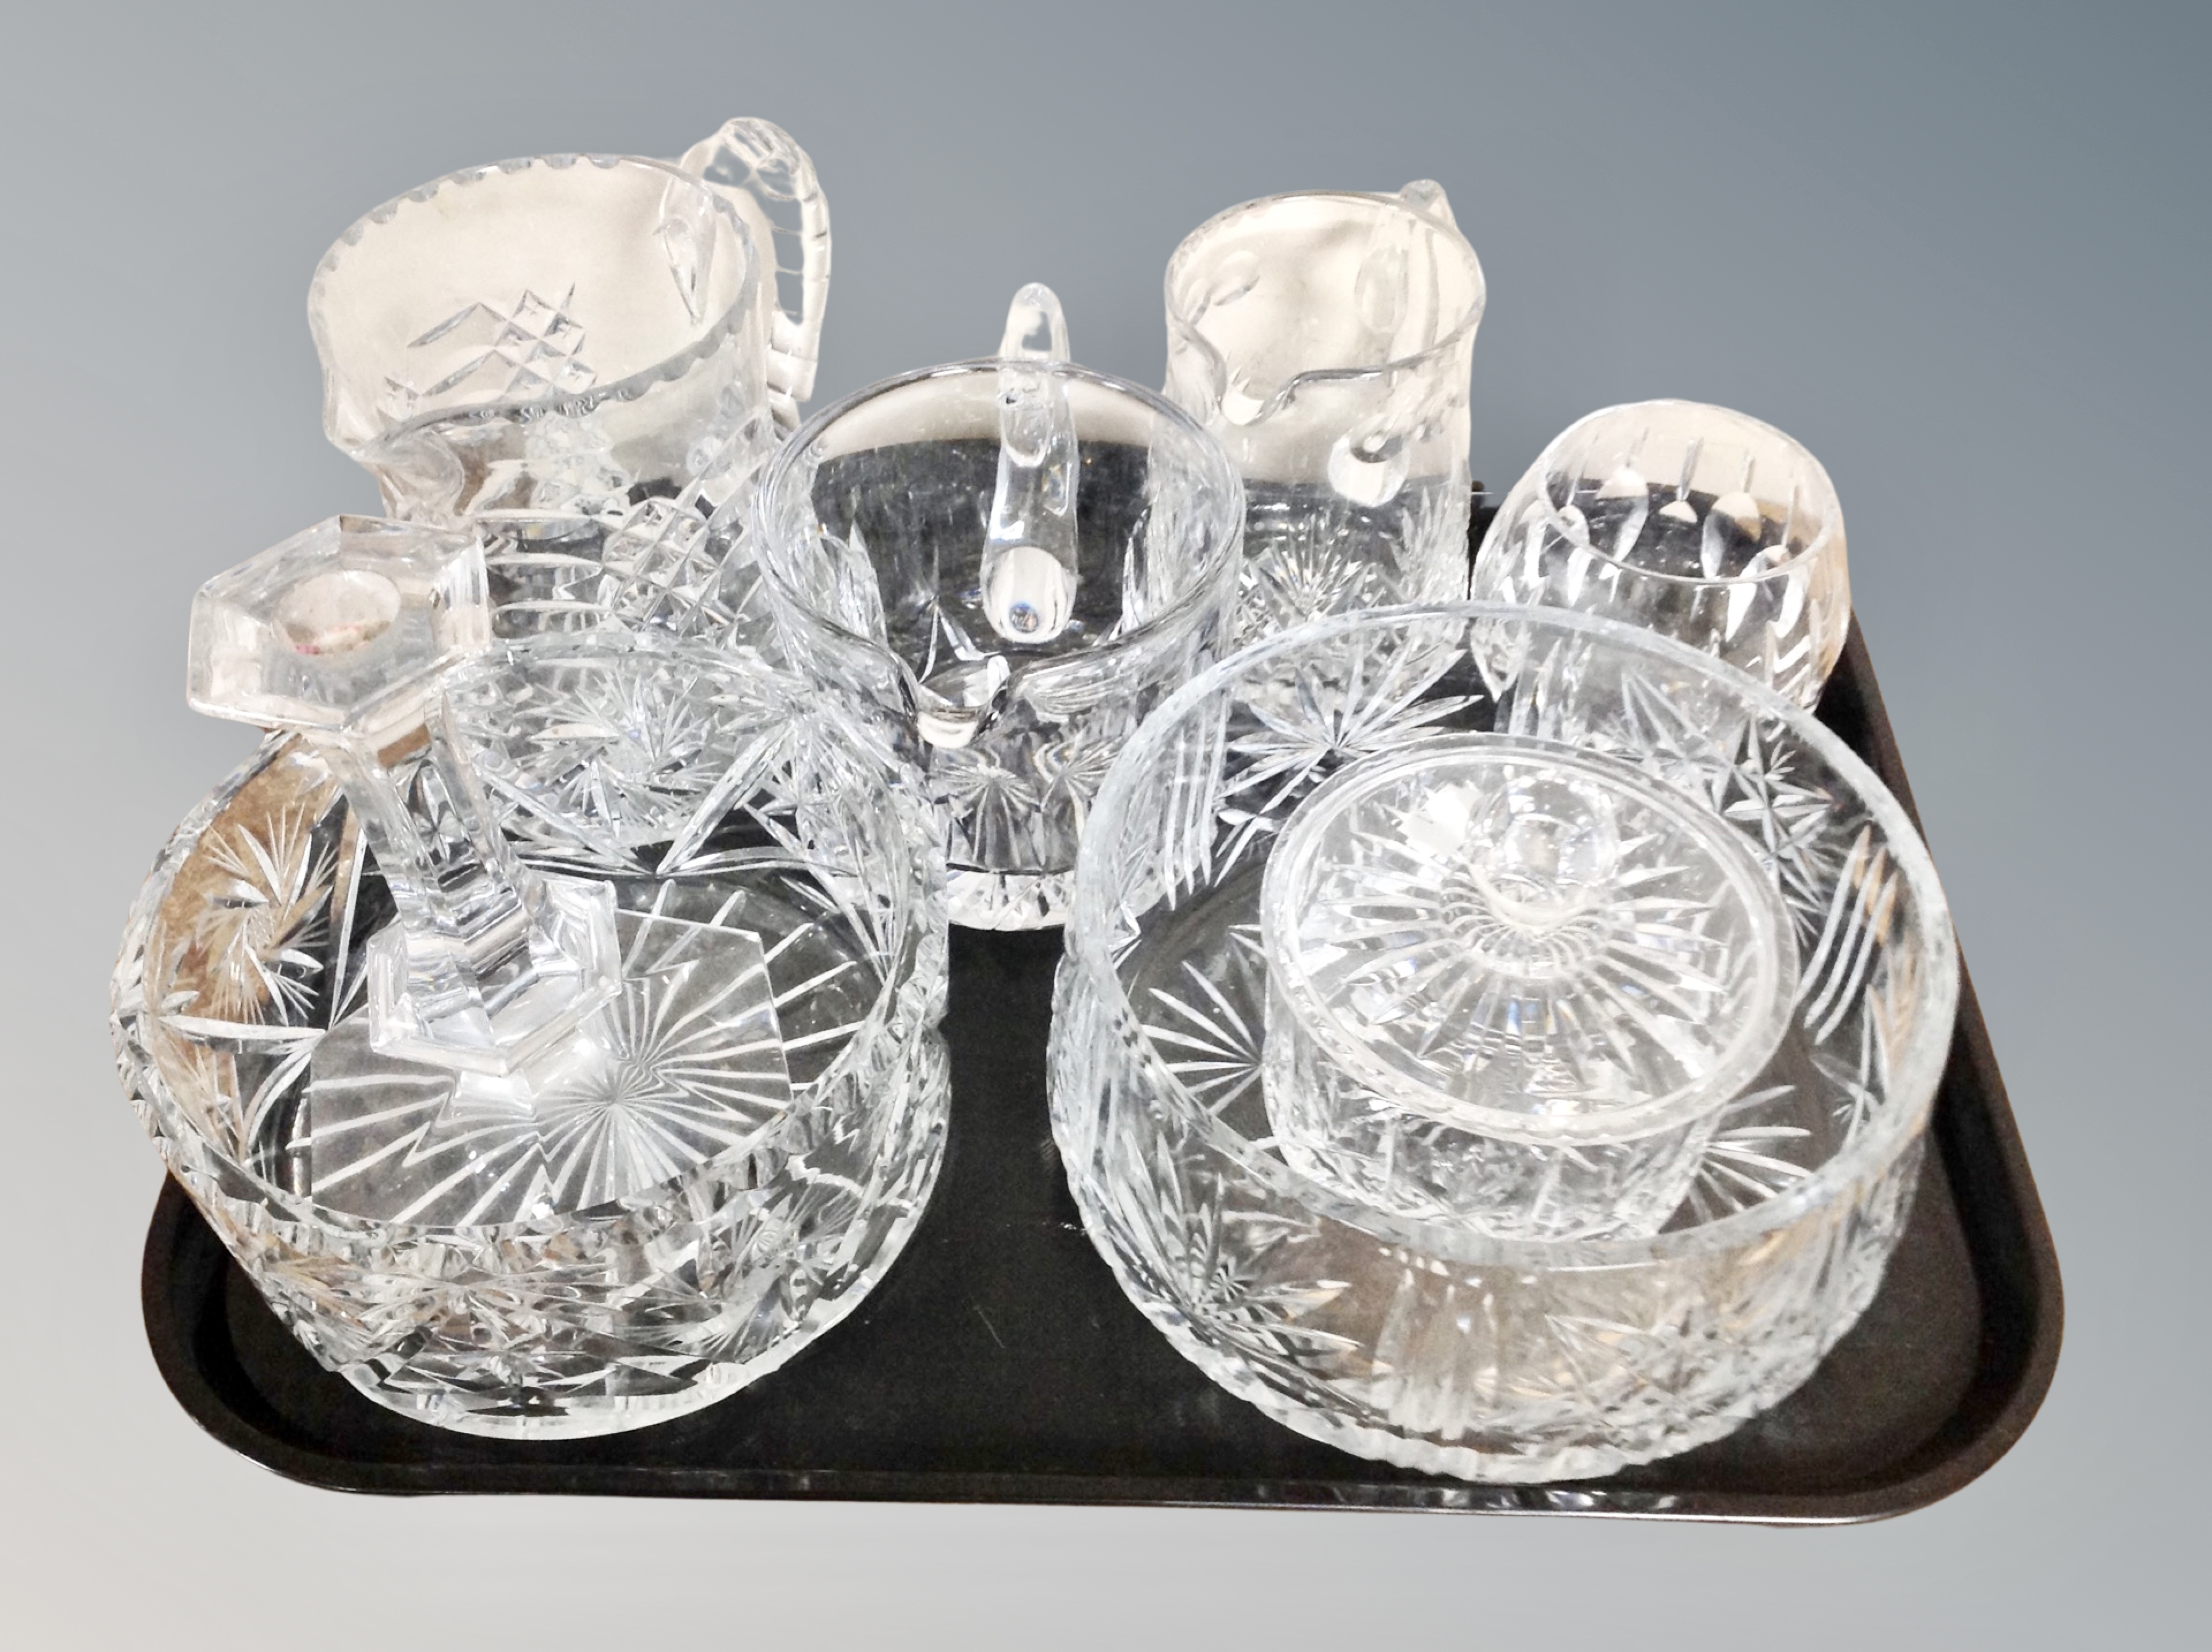 A tray of crystal bowls, jugs,